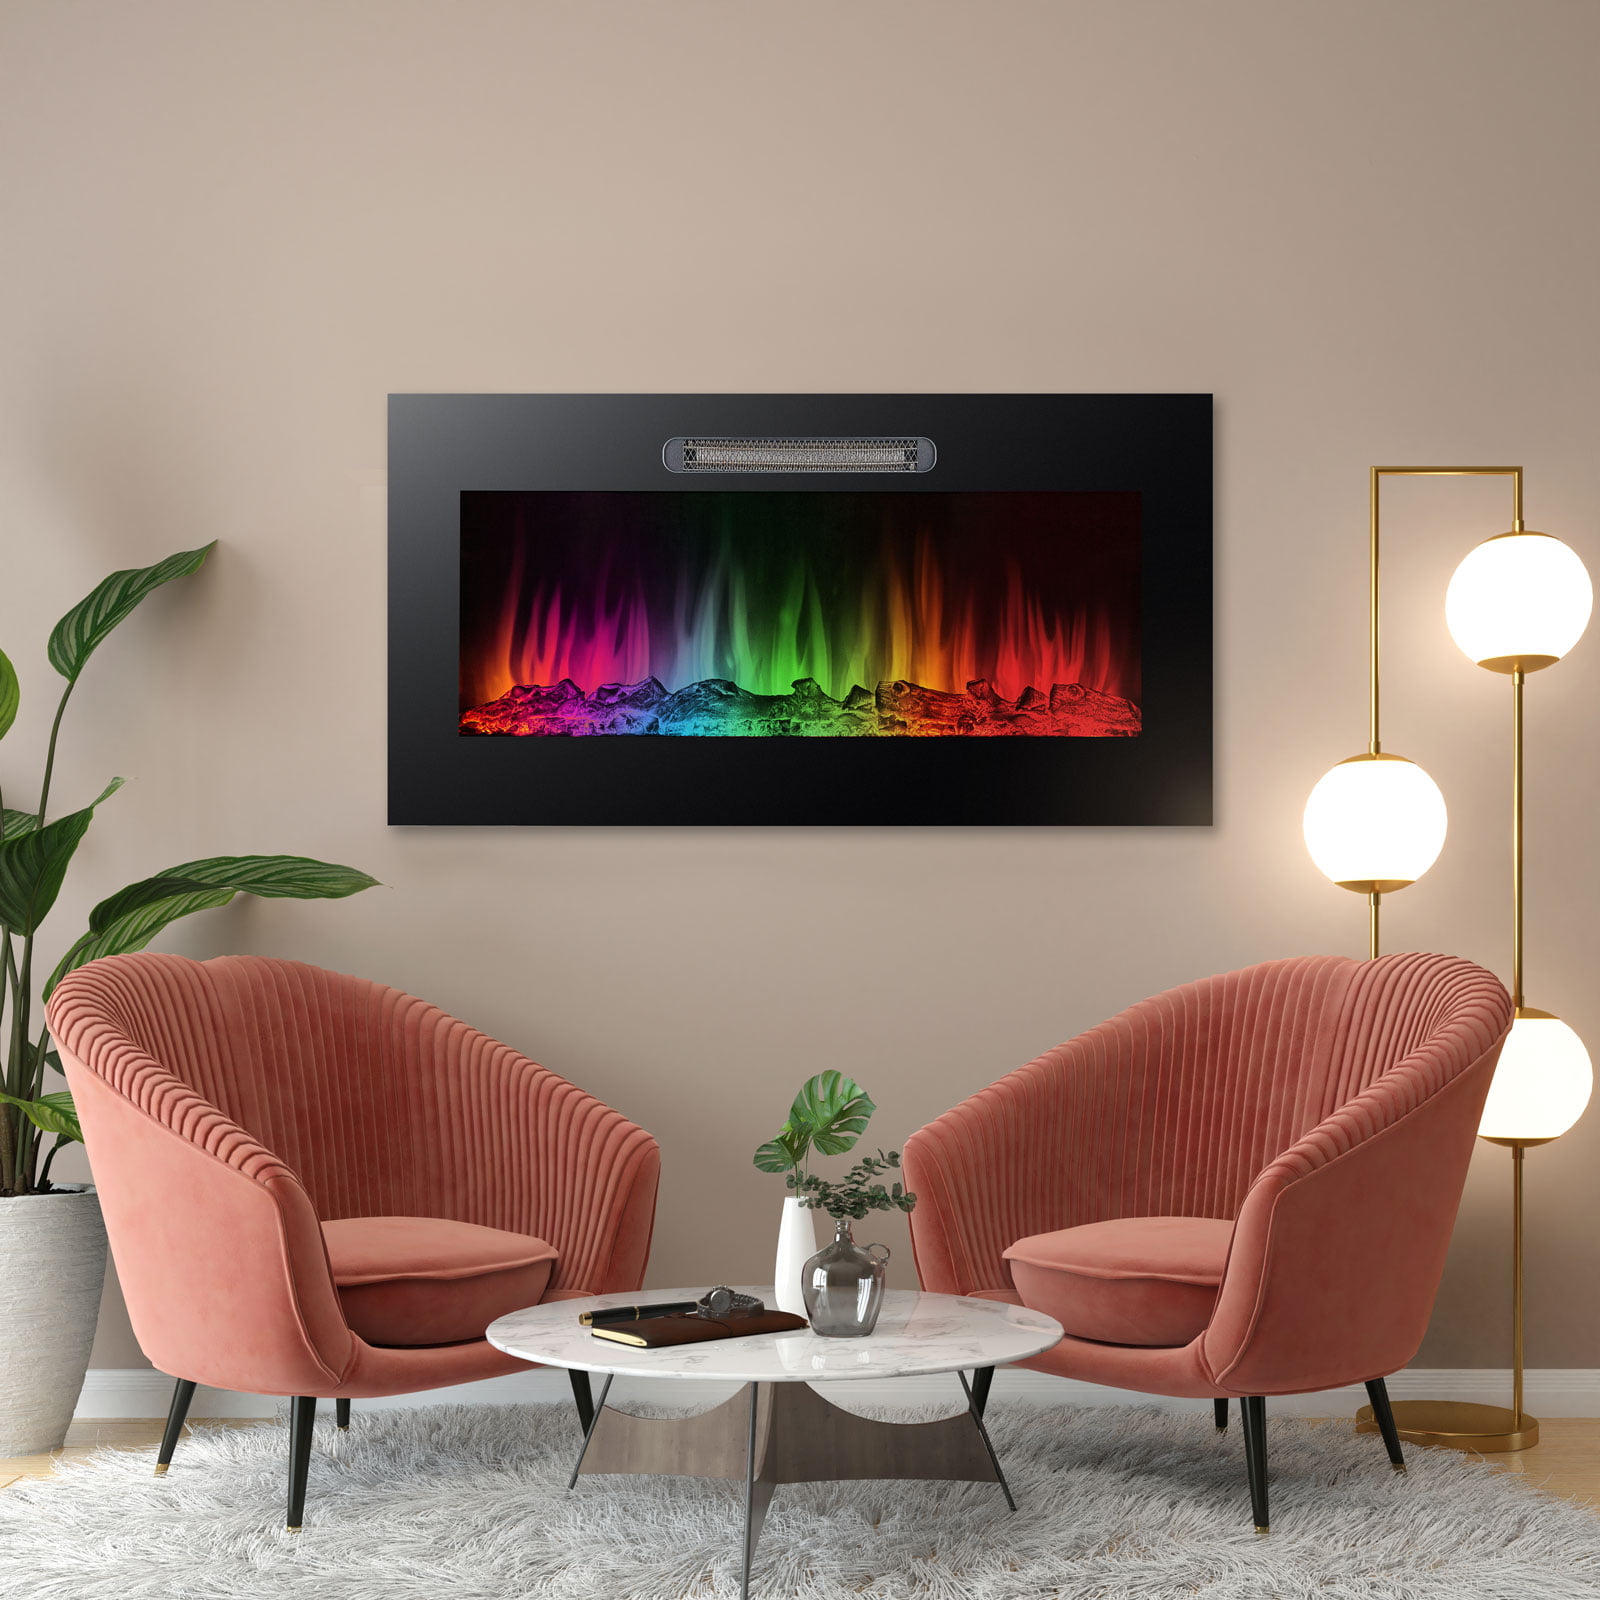 Elektromos beépíthető kandalló - hősugárzó + RGB LED - 91 cm